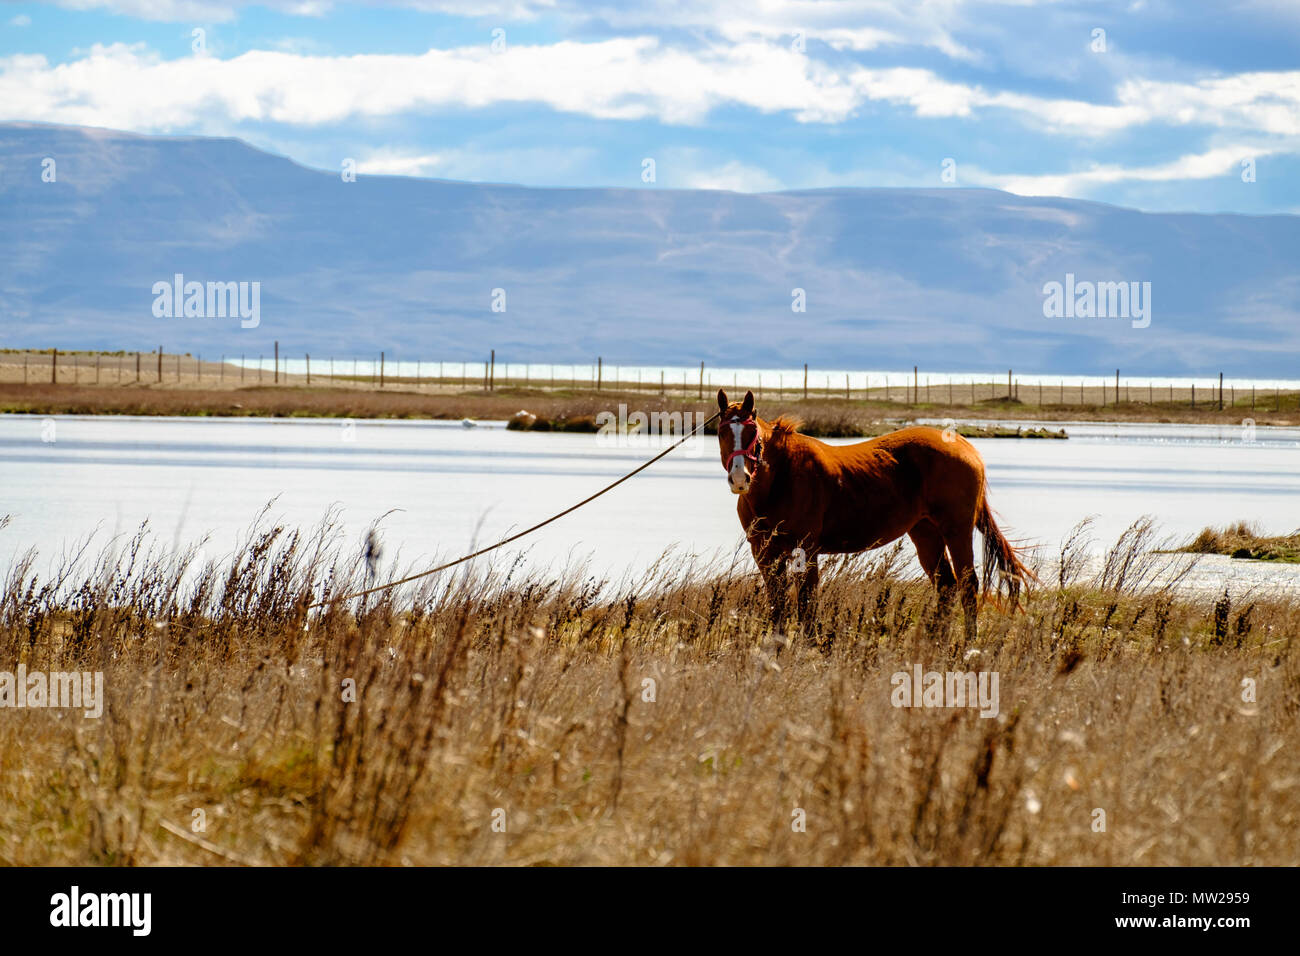 In der Laguna Nimez in El Calafate, südlichen Argentinien, Pferde werden verwendet, um das Gelände zu streifen. Im Hintergrund sehen Sie den Lago Argentino. Stockfoto